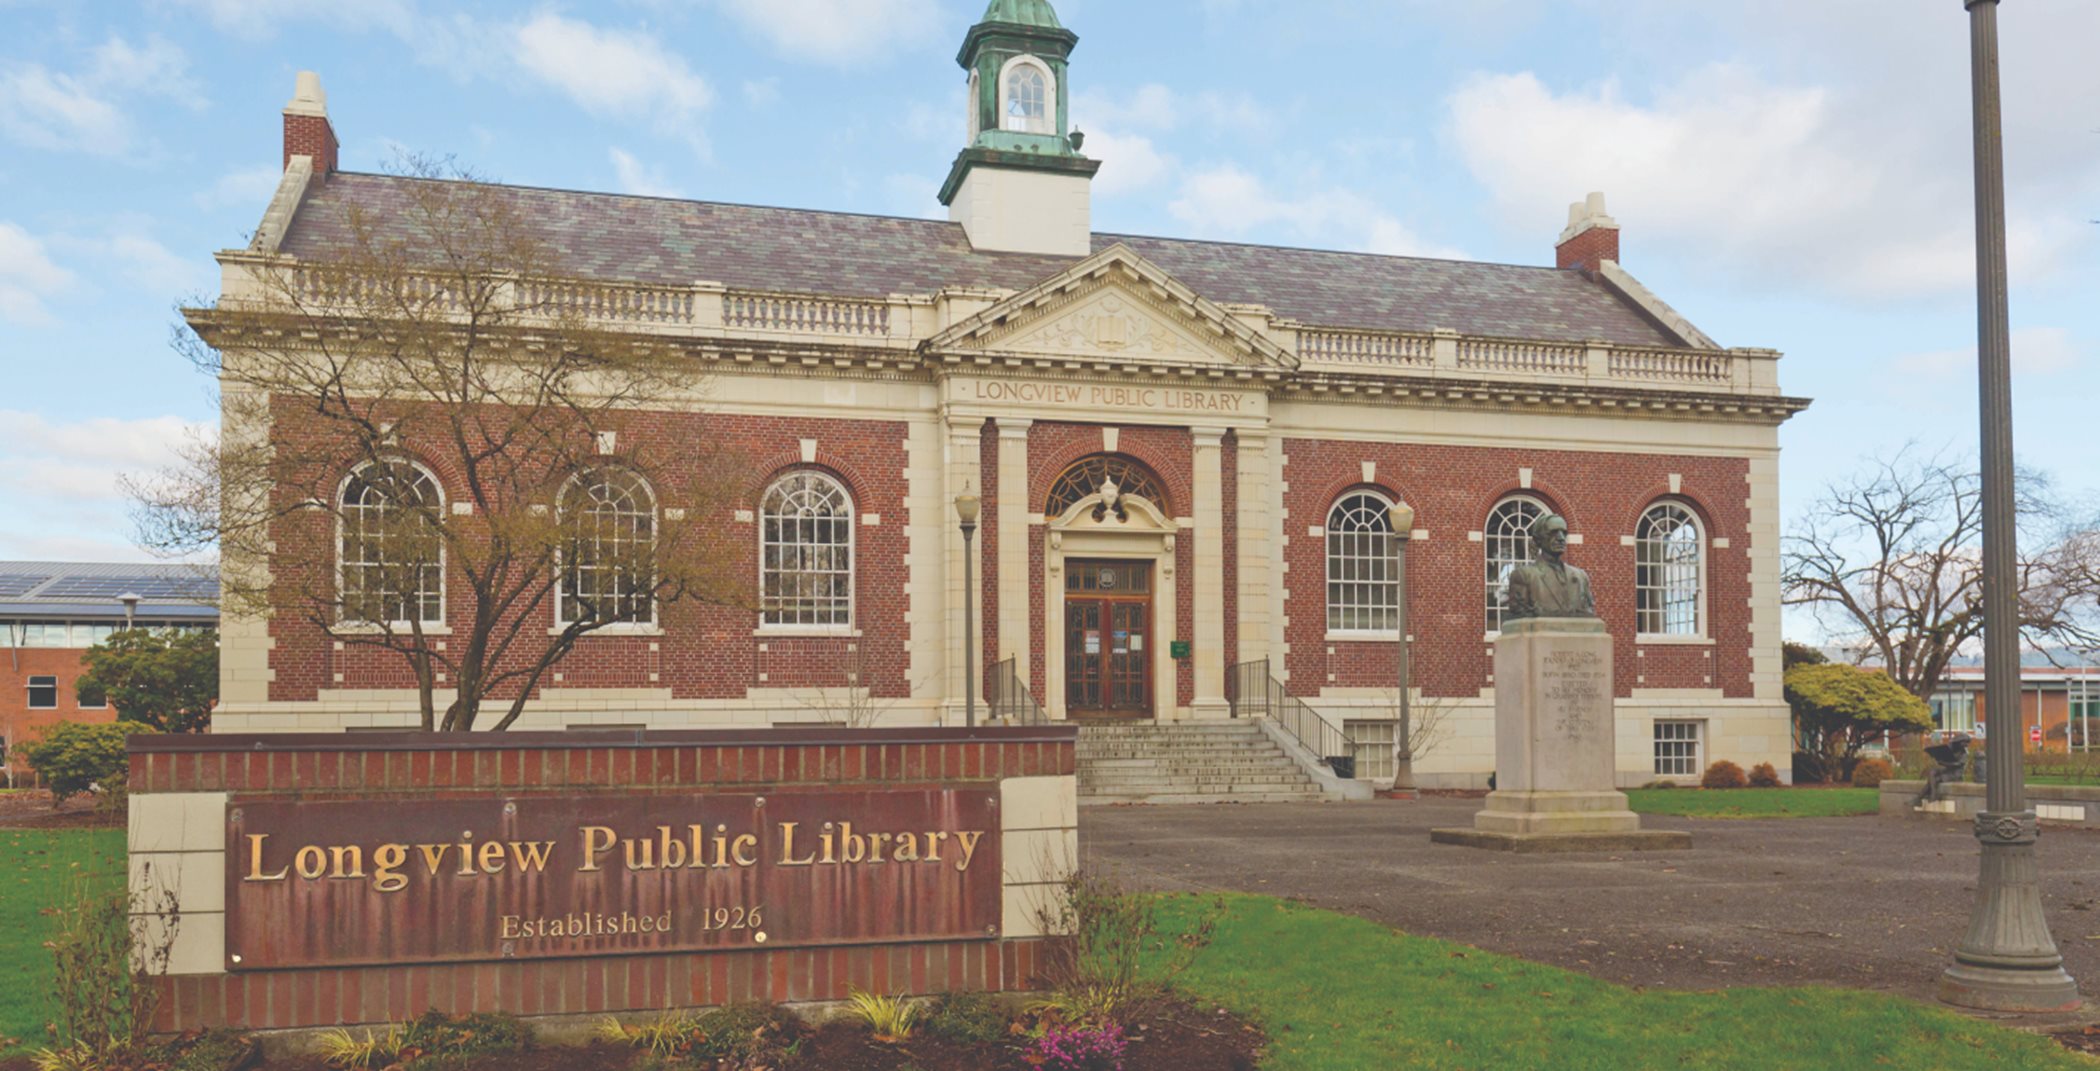 Longview Public Library building